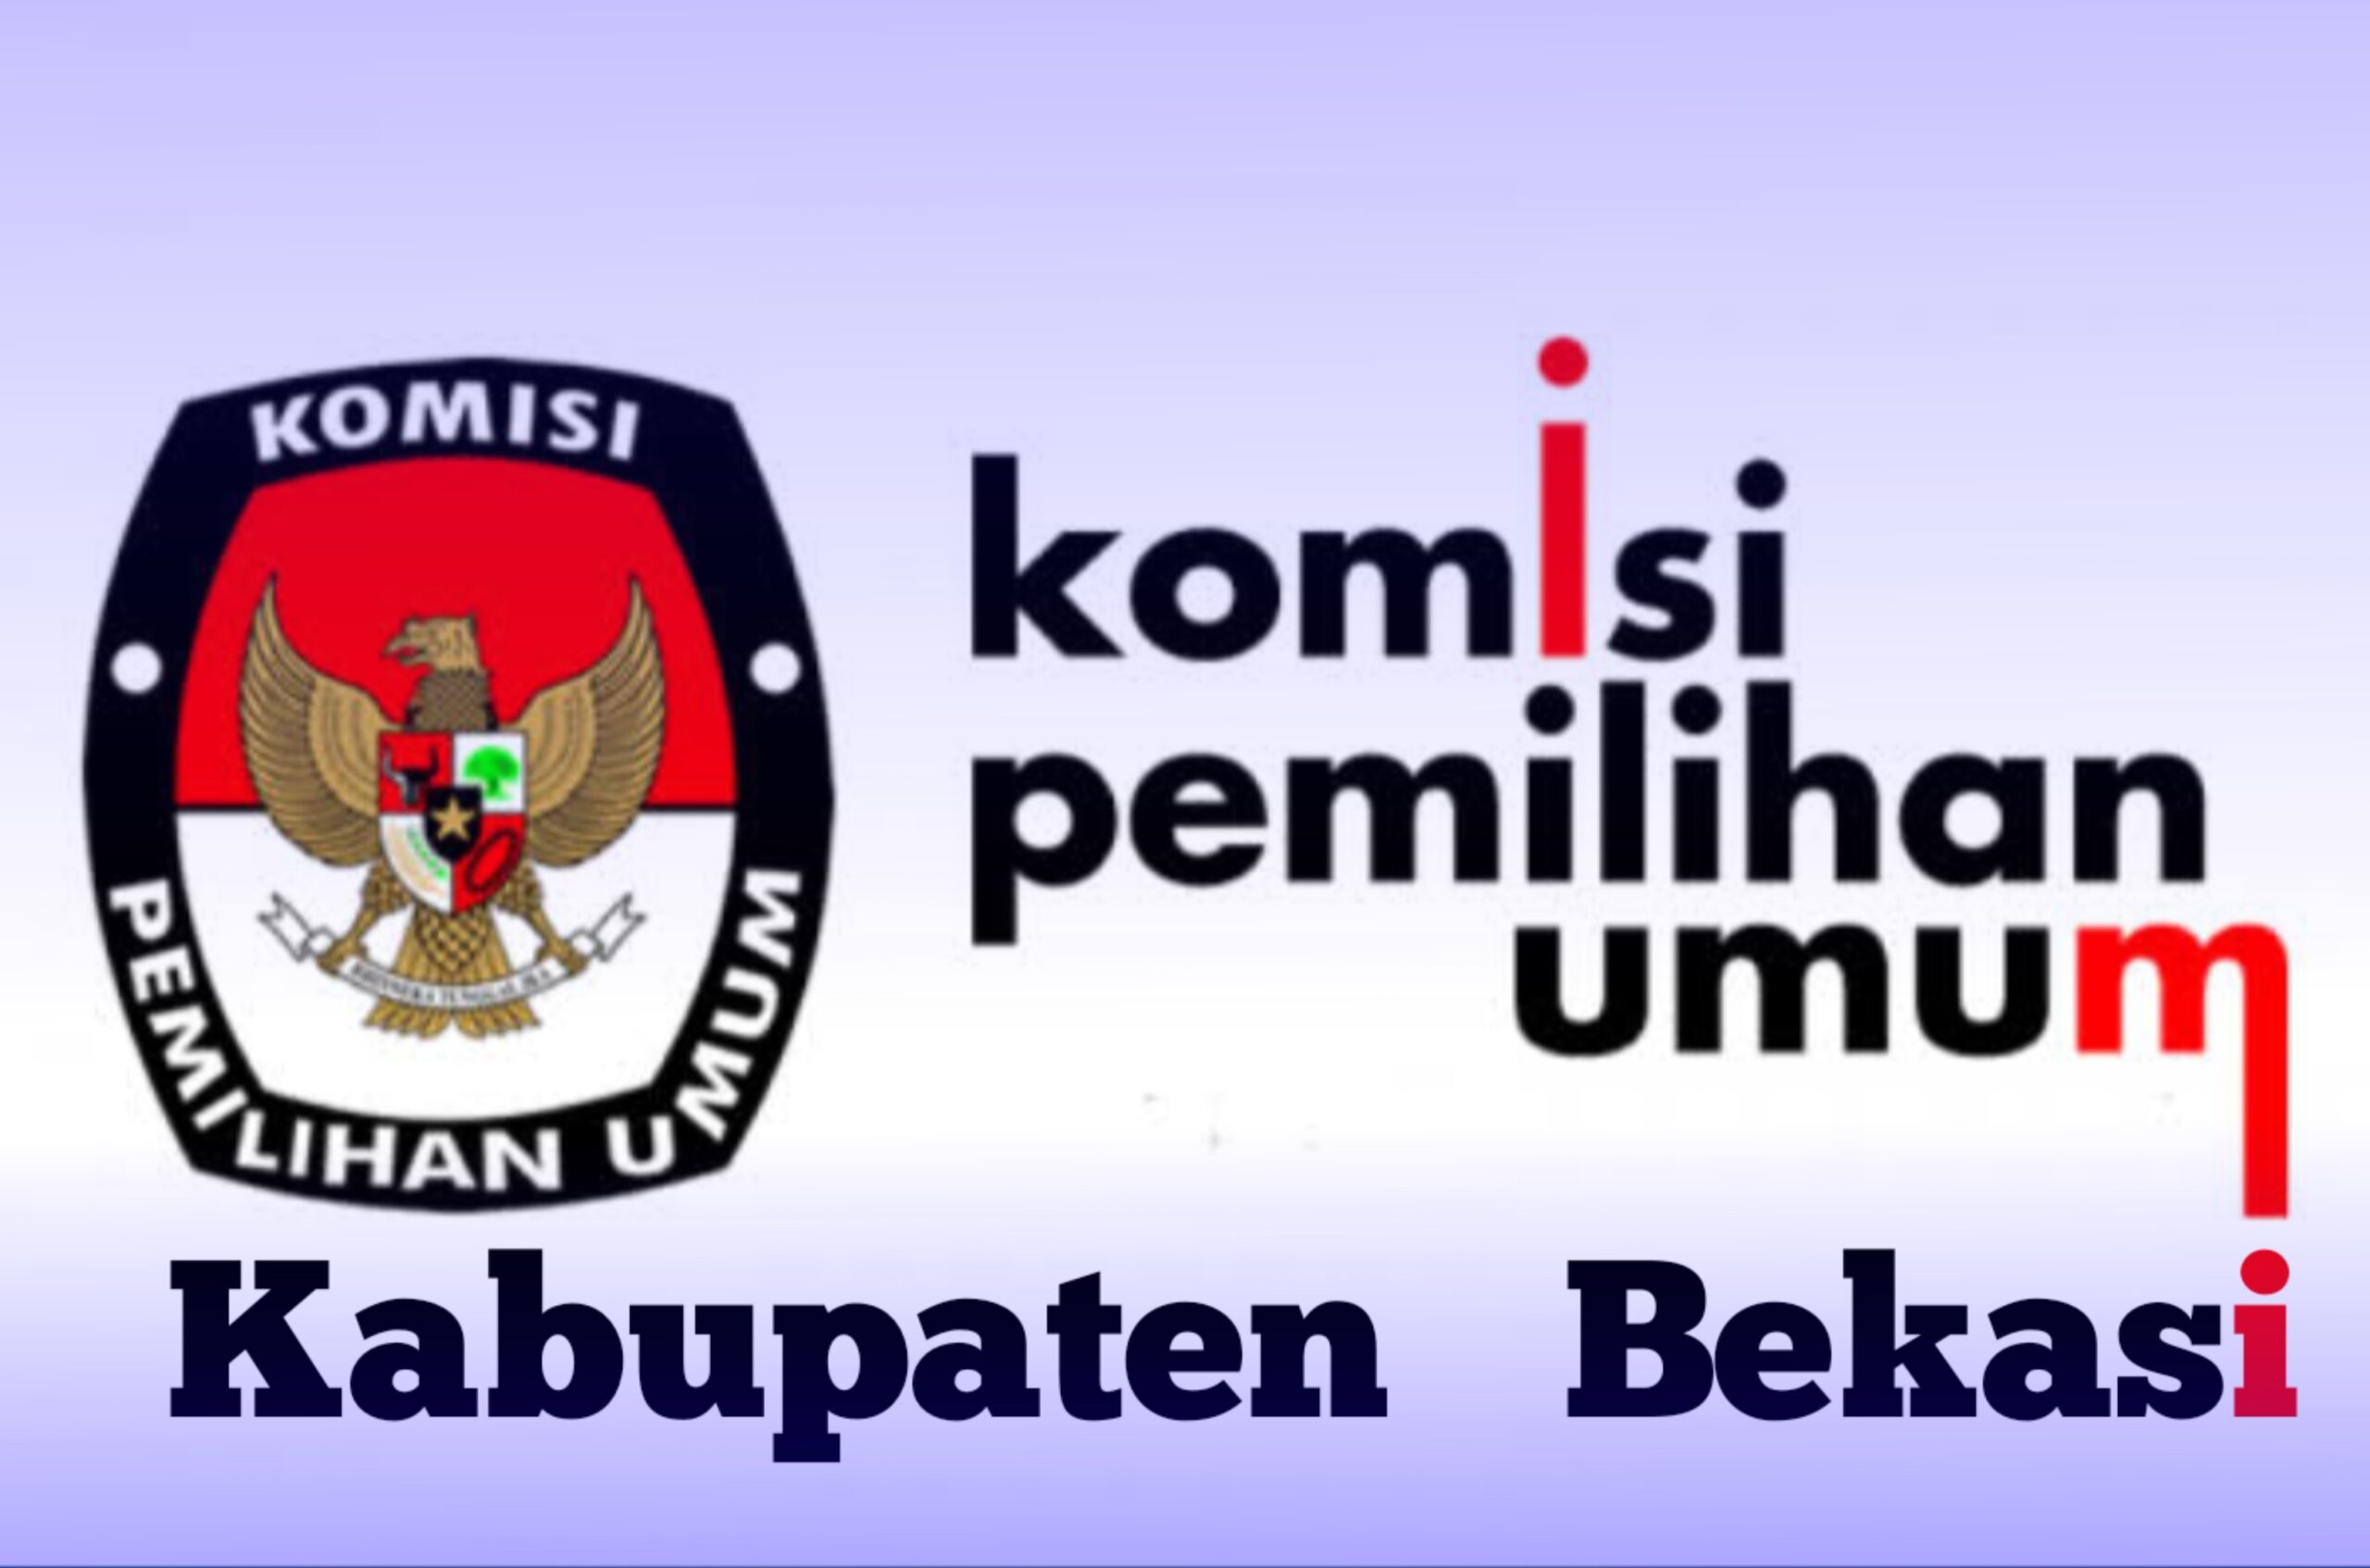 Foto: Ilustrasi Gambar Logo KPU Kabupaten Bekasi